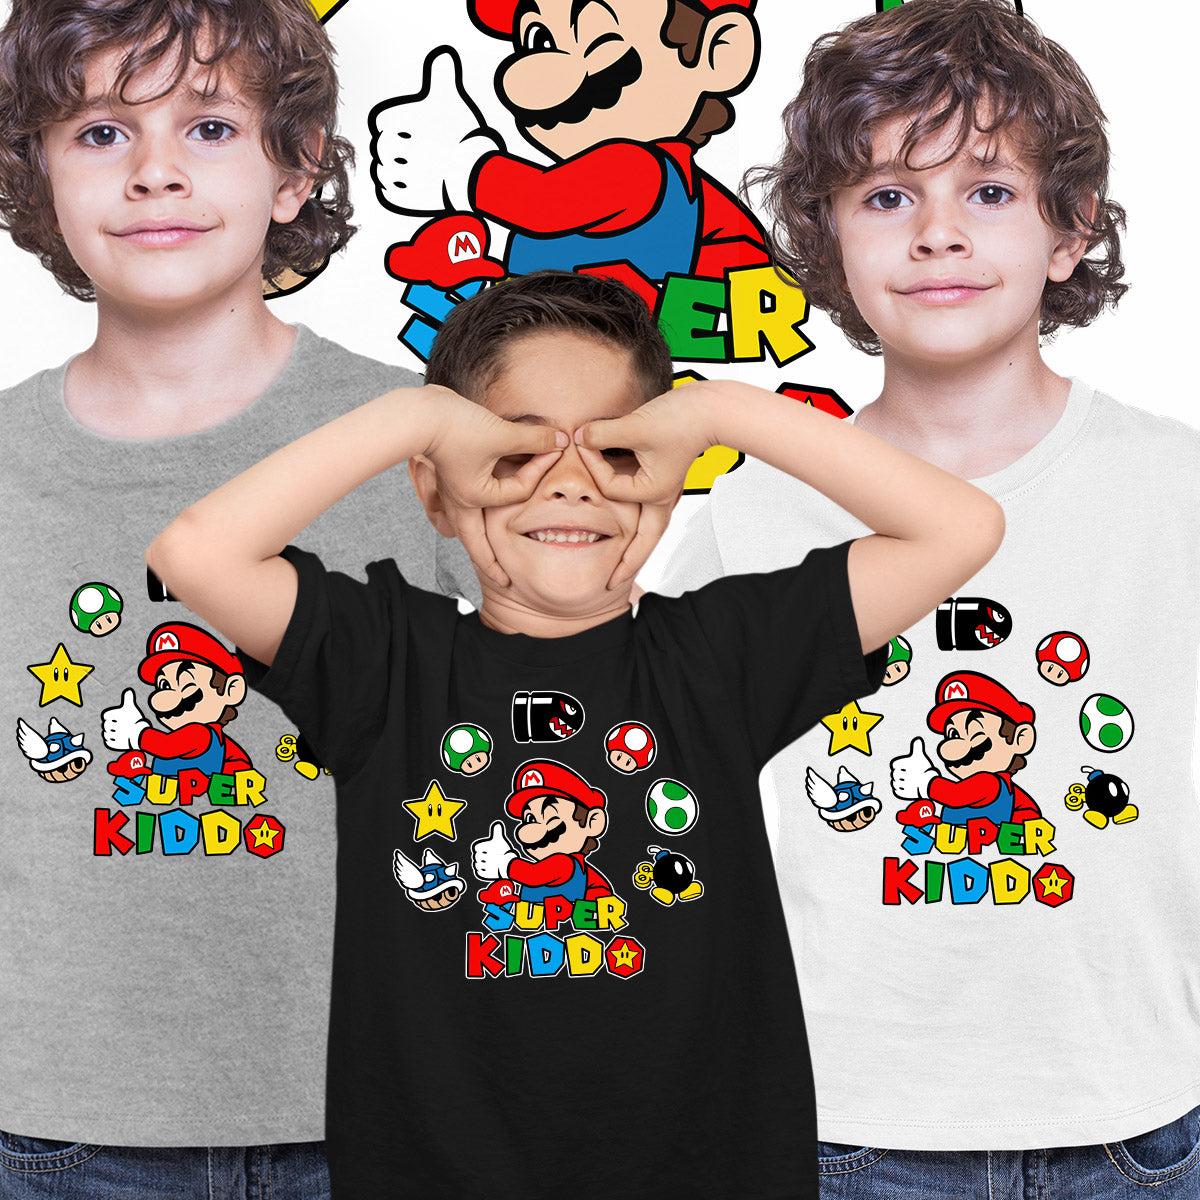 Super Kiddo T-shirt Mario Birthday Kids Custom Gaming Birthday Kids T-shirt